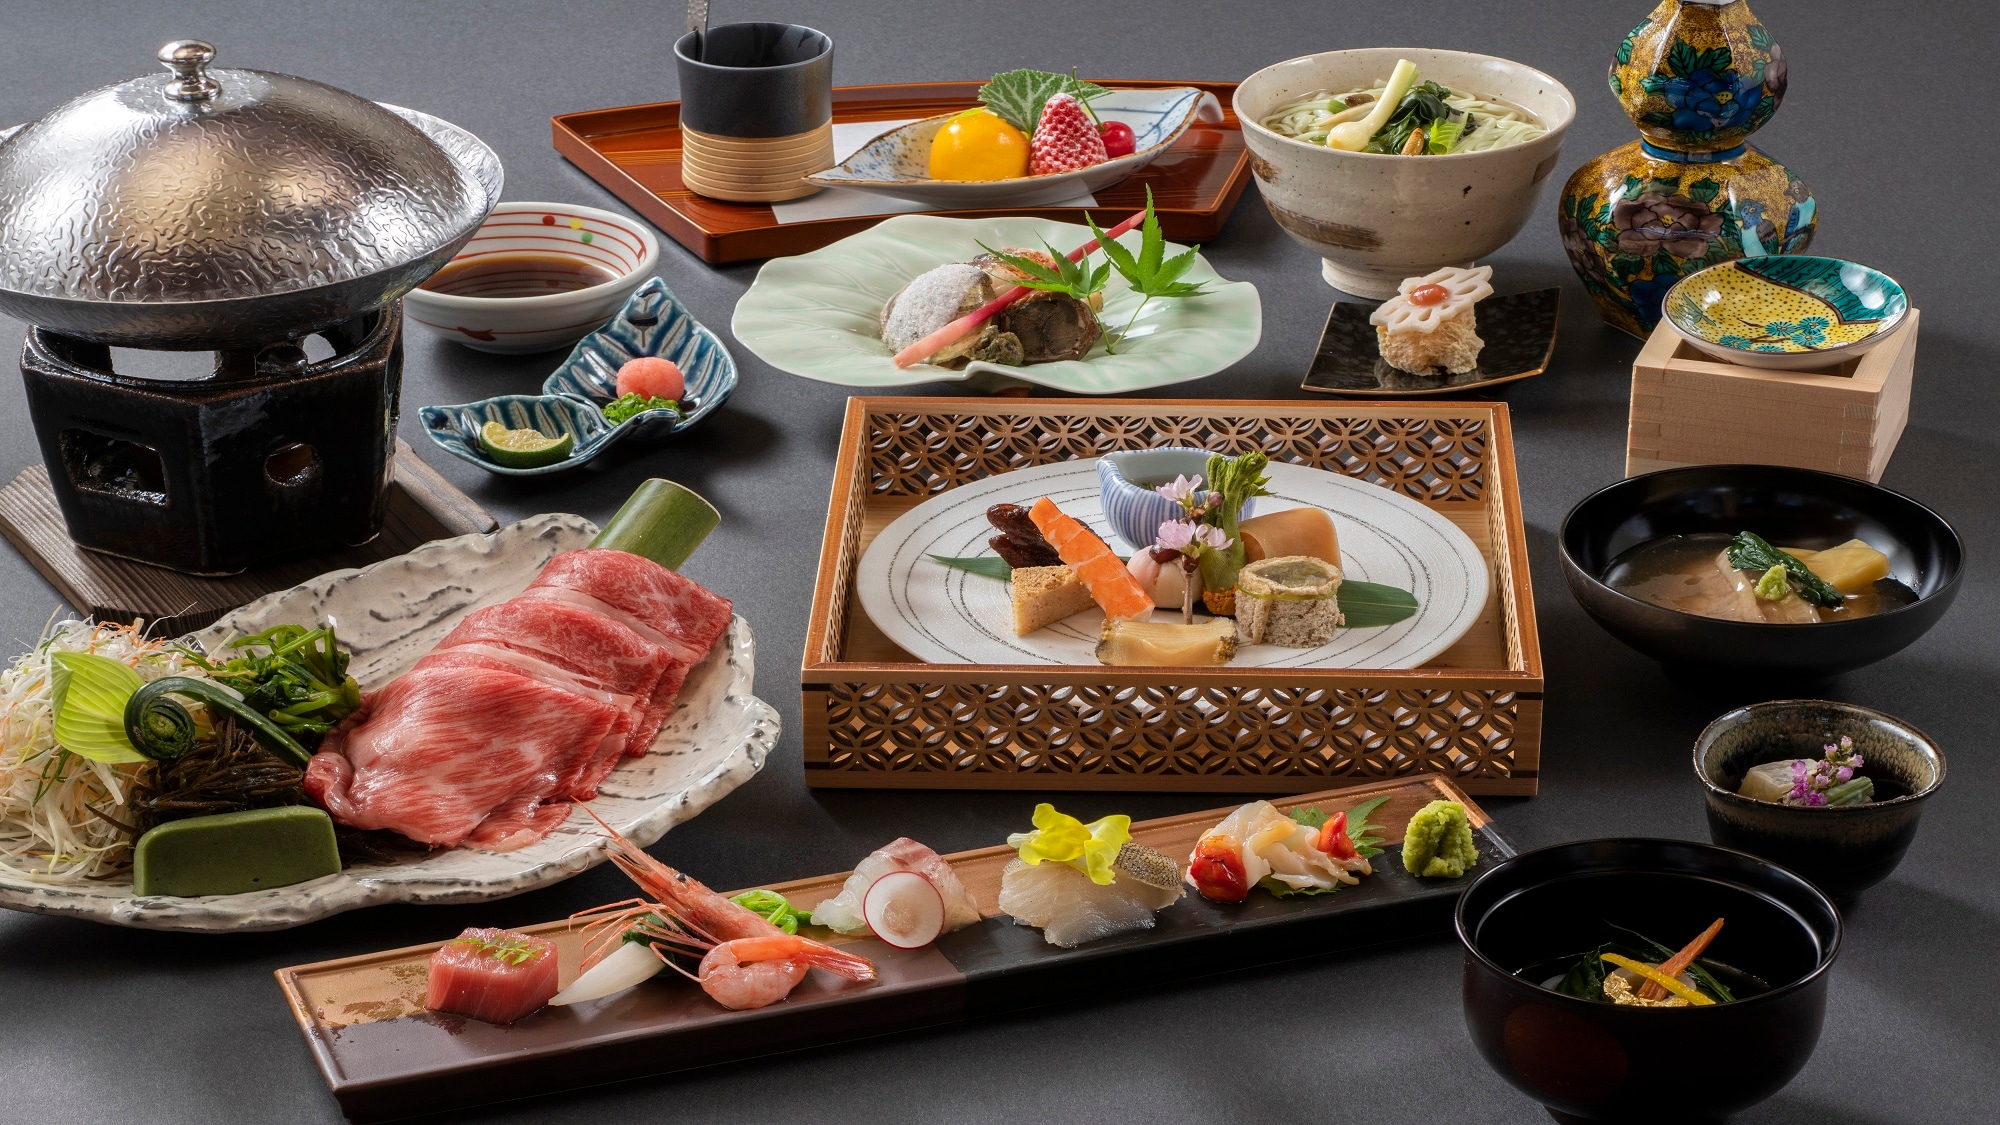 [ภาพอาหารค่ำ] โปรดเพลิดเพลินกับอาหารไคเซกิแบบญี่ปุ่นผสมกับผักตามฤดูกาลที่จับได้ใน Satoyama Satoumi ของ Noto